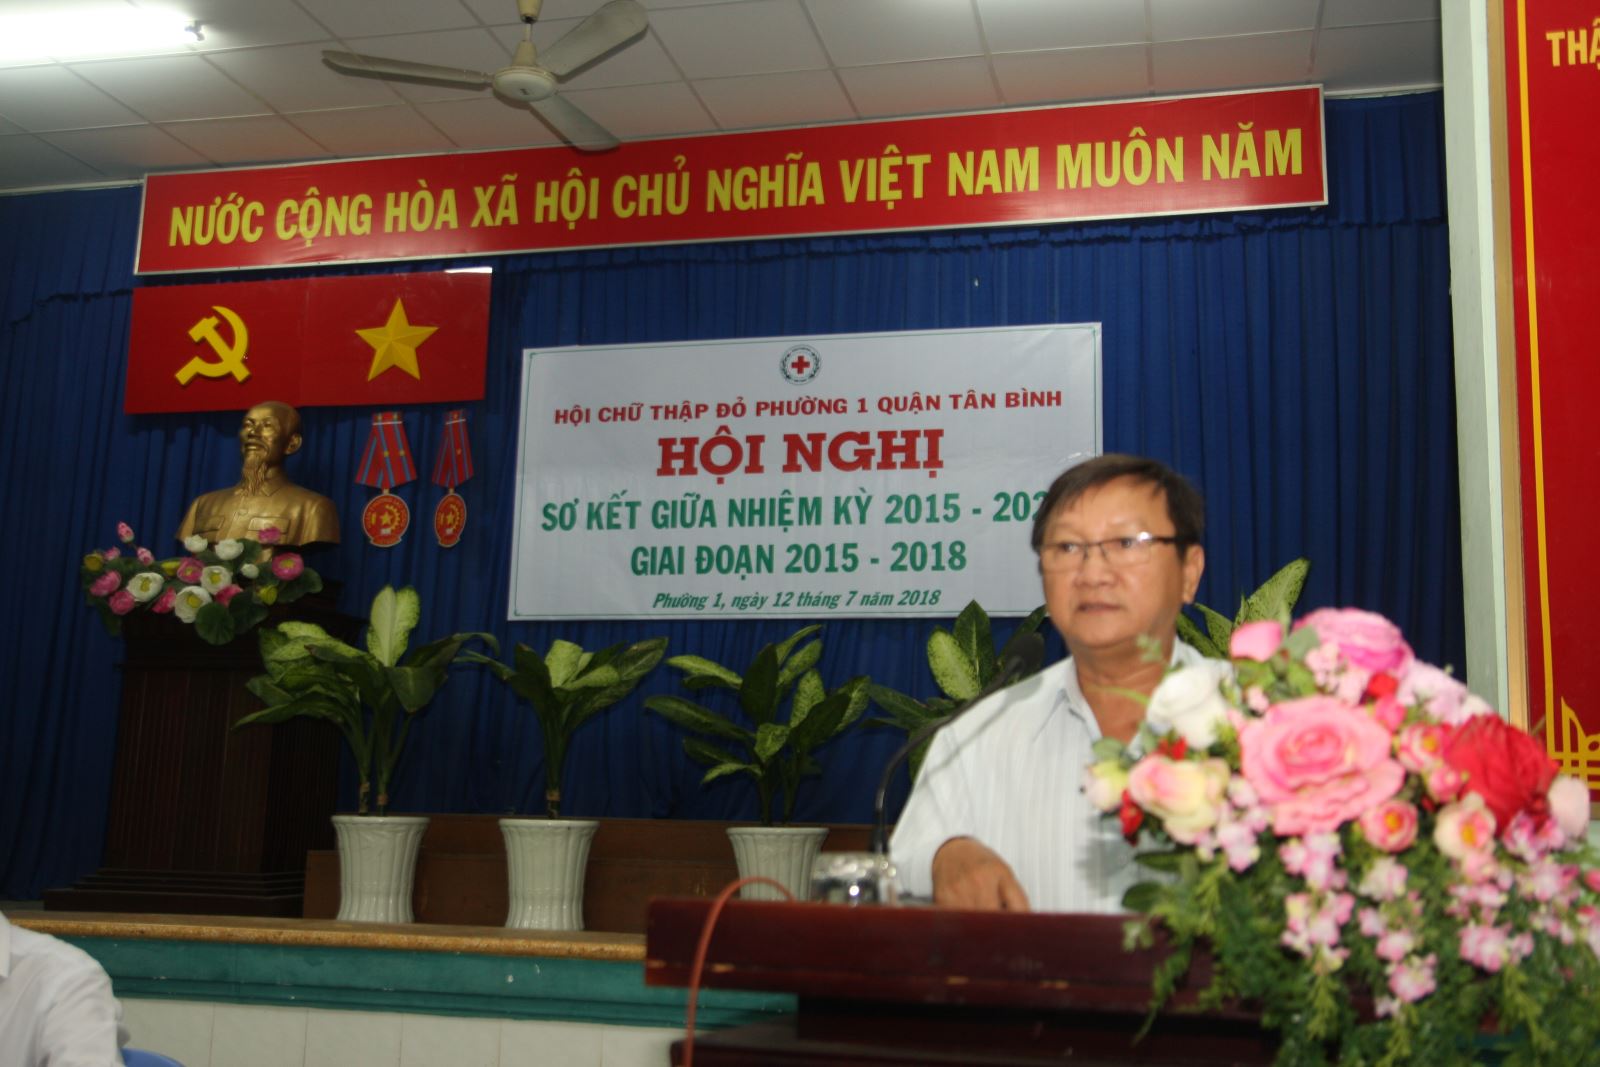 Ông Đỗ Văn Ánh, Phó Chủ tịch Hội Chữ thập đỏ quận Tân Bình phát biểu chỉ đạo Hội nghị.